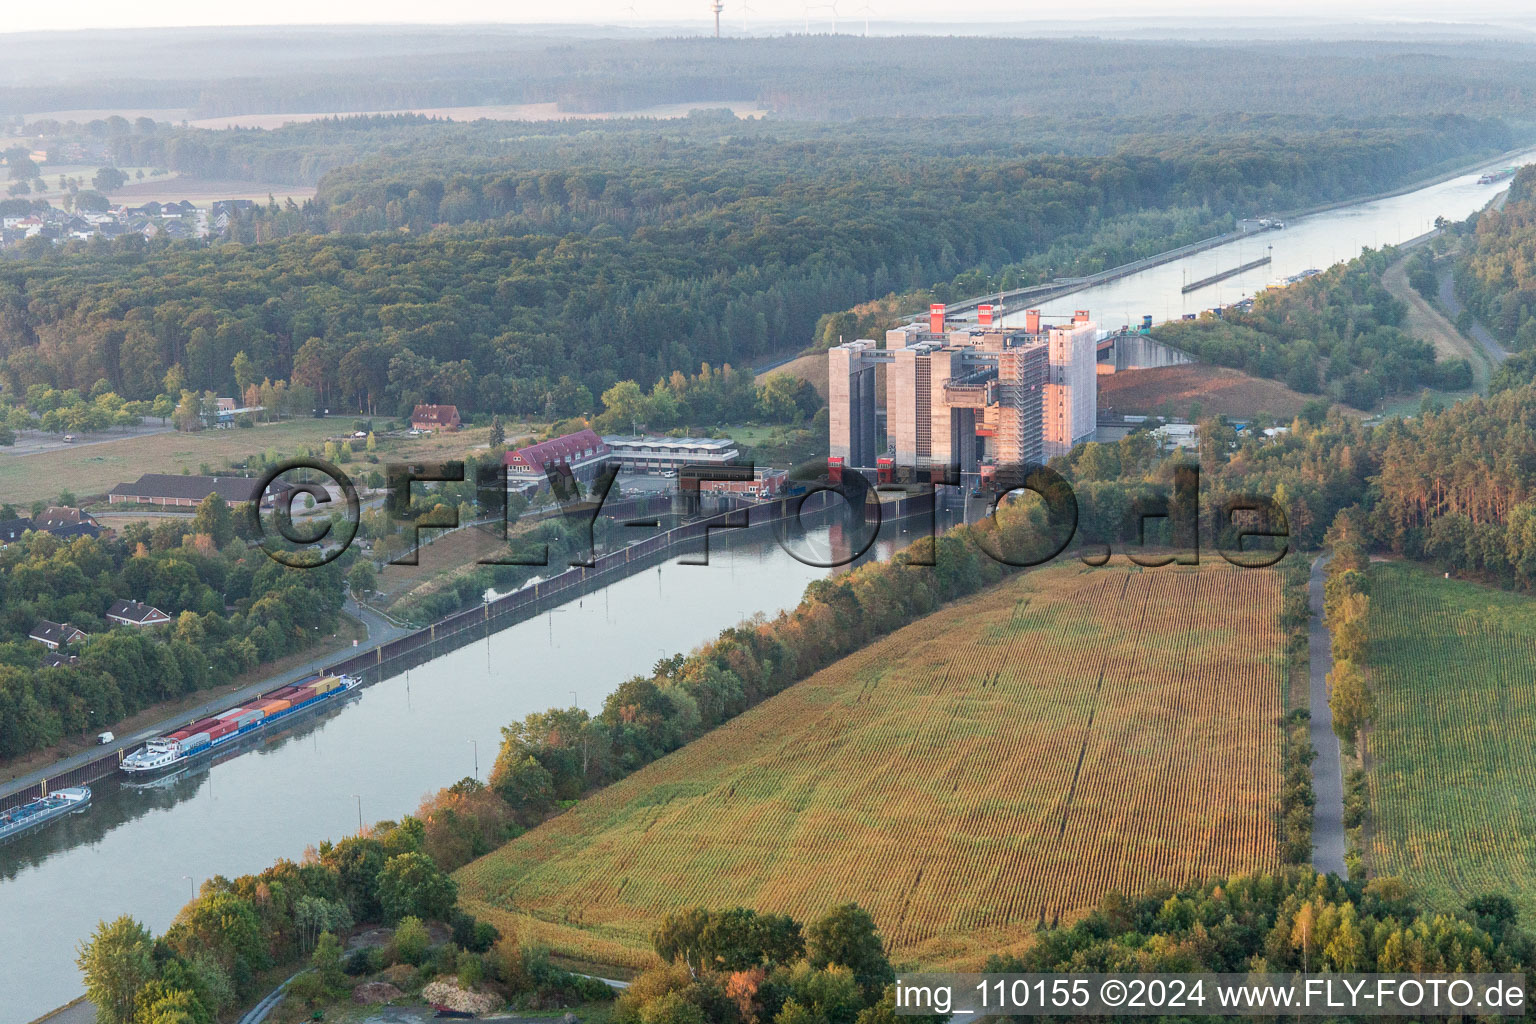 Luftbild von Schiffshebewerk und Schleusenanlagen am Ufer der Wasserstraße des Elbeseitenkanals in Scharnebeck im Bundesland Niedersachsen, Deutschland